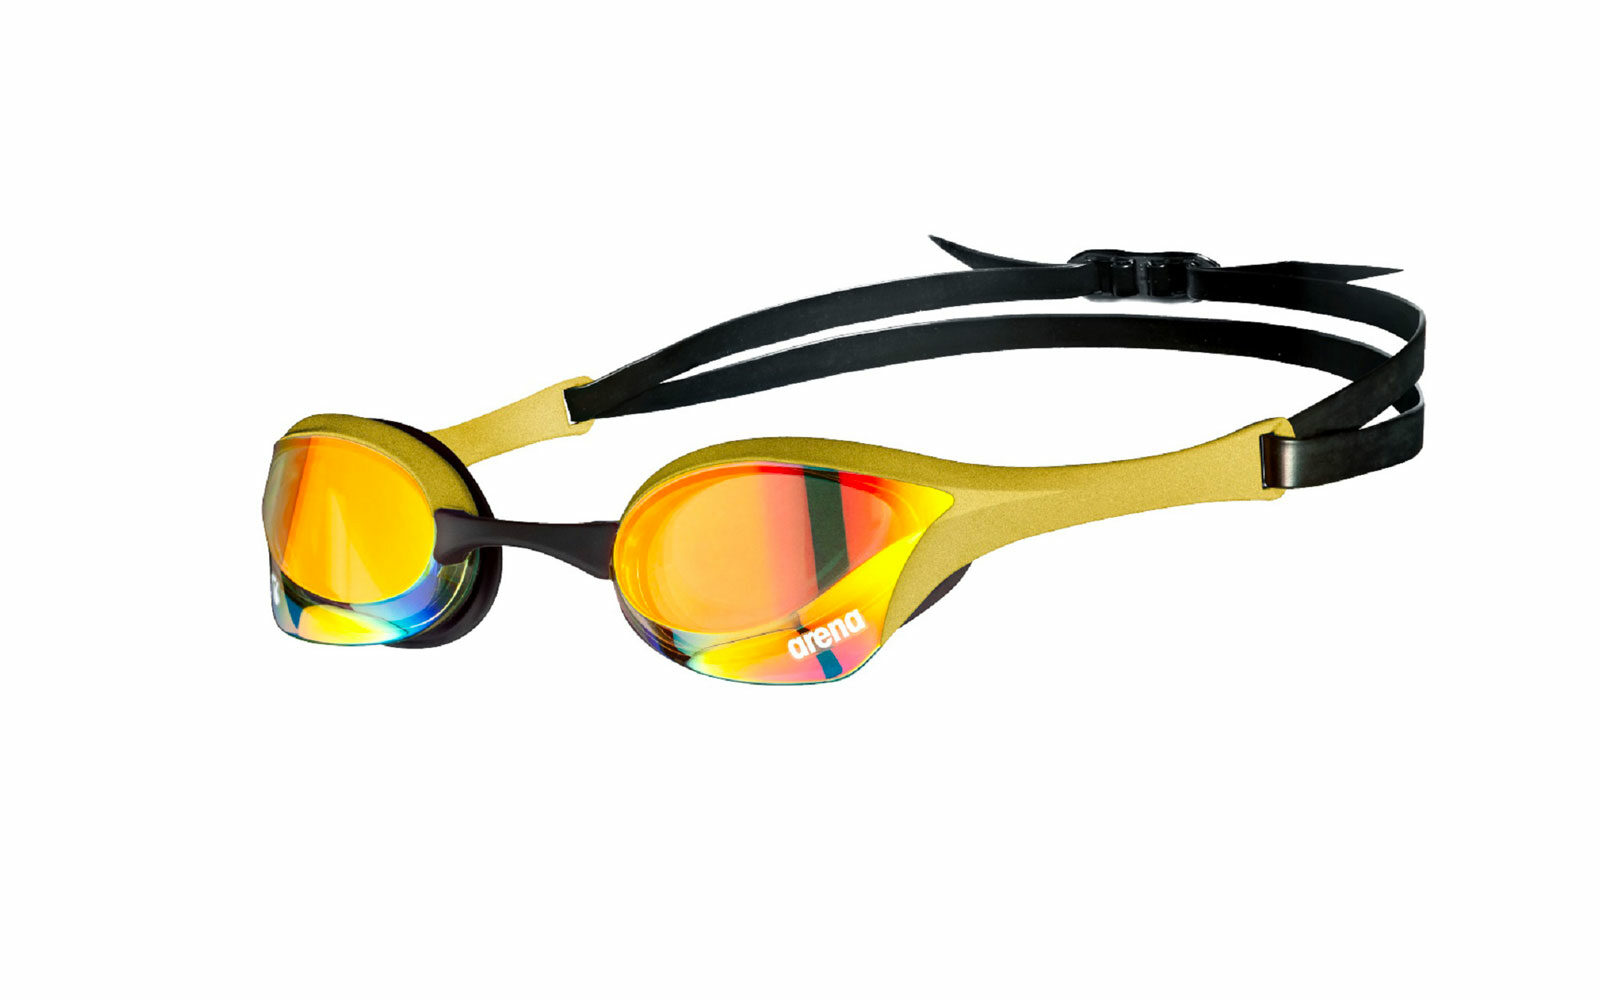 Per il NUOTO all’aperto, occhialini Arena Cobra Ultra Swipe anti UV, con innovativa tecnologia antiappannamento: basta bagnarli e strofinarli con un dito per mantenerli trasparenti più a lungo. Da euro 69,95.